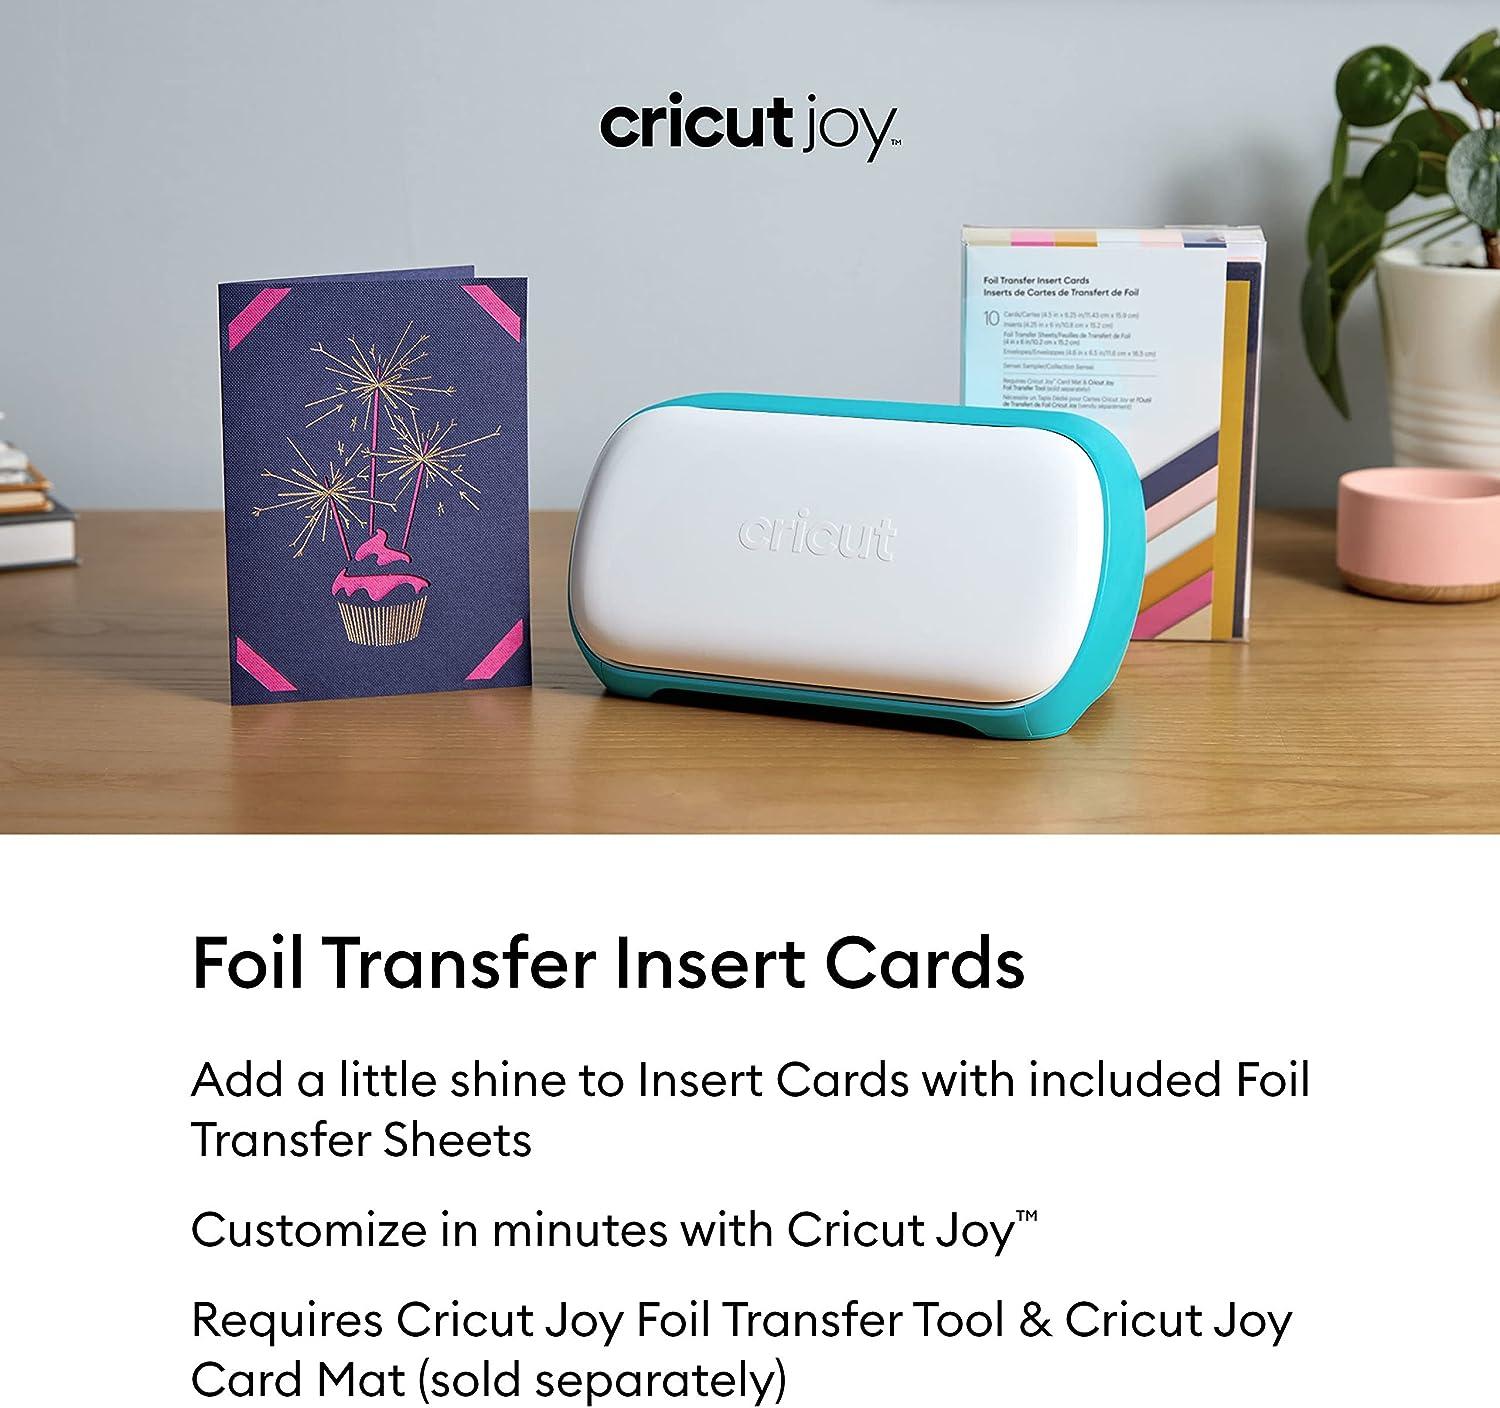 Cricut Joy Foil Transfer Tool, Cricut Joy Foil Transfer Kit